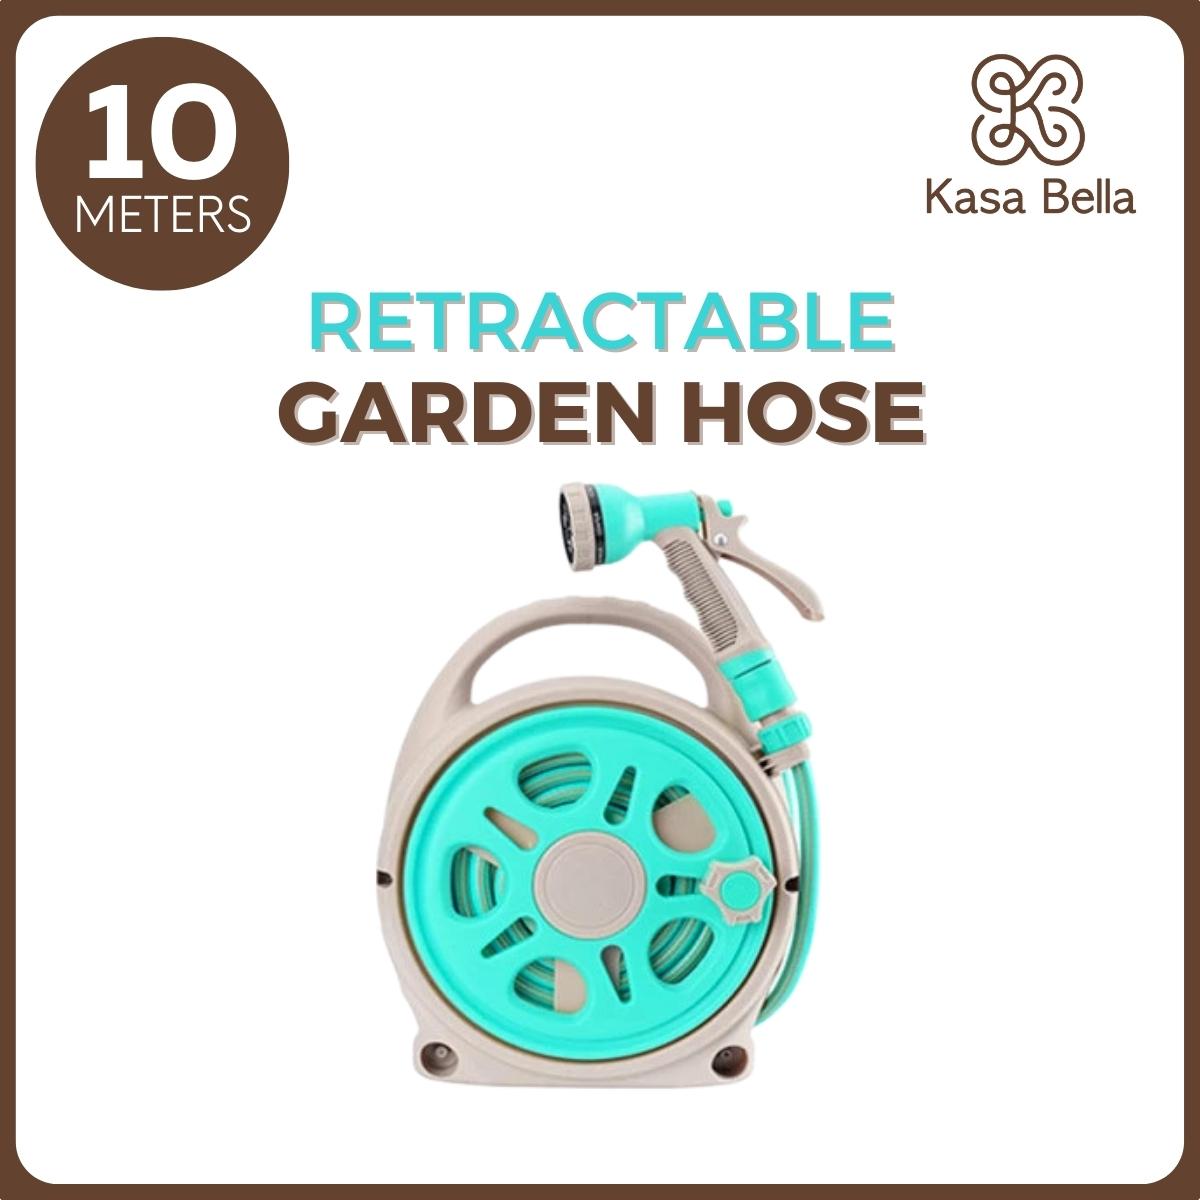 Kasa Bella - Garden Hose with Reel, Retractable Hose, Retractable Hose  Reel, Water Hose Reel, Retractable Water Hose, Retractable Garden Hose, Garden Hose Complete Set